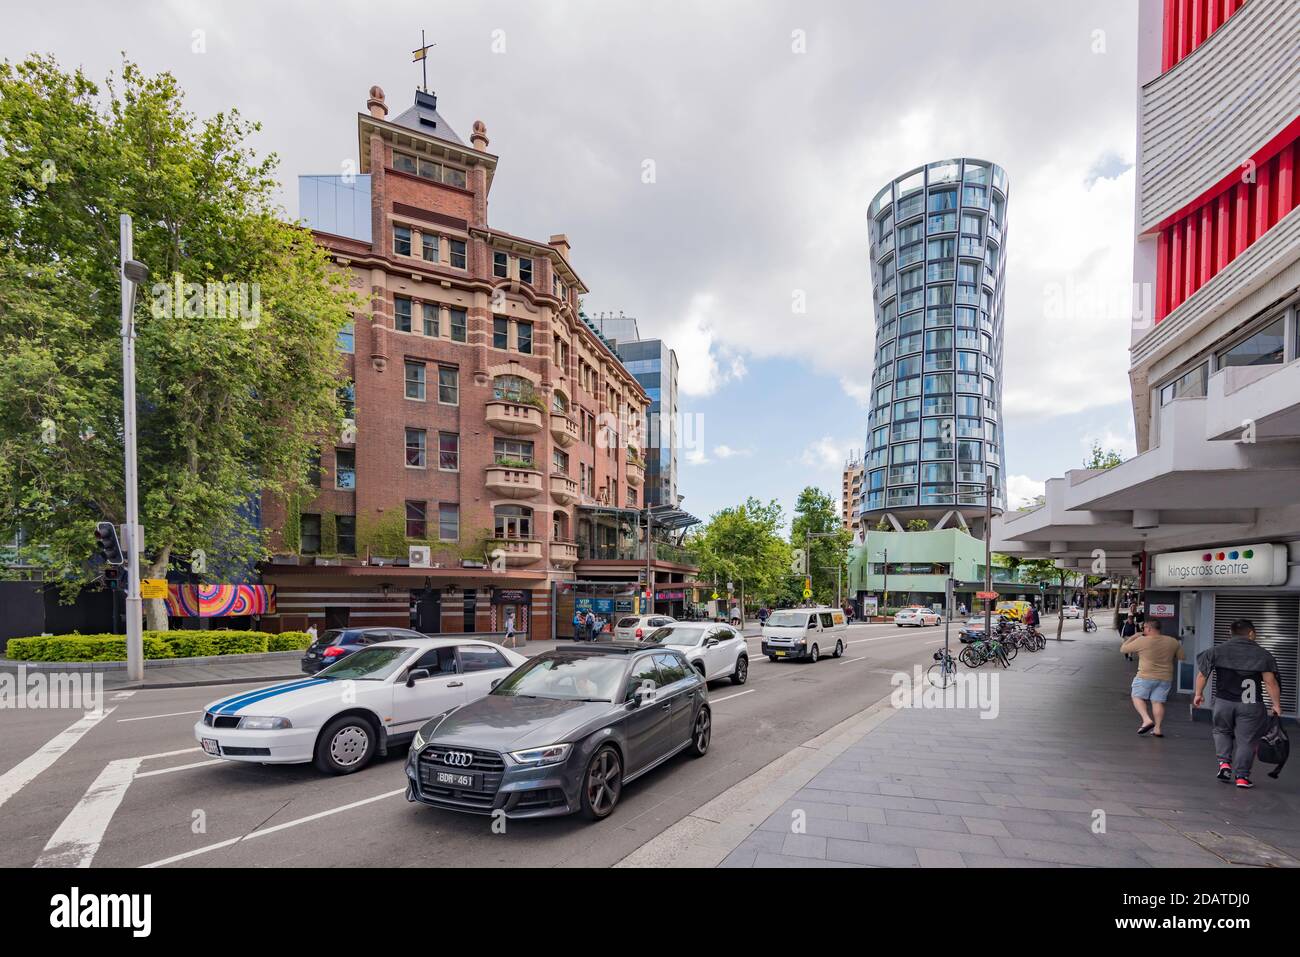 Il 1915 Kings Cross Hotel, in stile classico e gratuito della Federazione, è in contrasto con la torre residenziale Omnia, a forma di clessidra, costruita nel 2018 a Sydney. Foto Stock